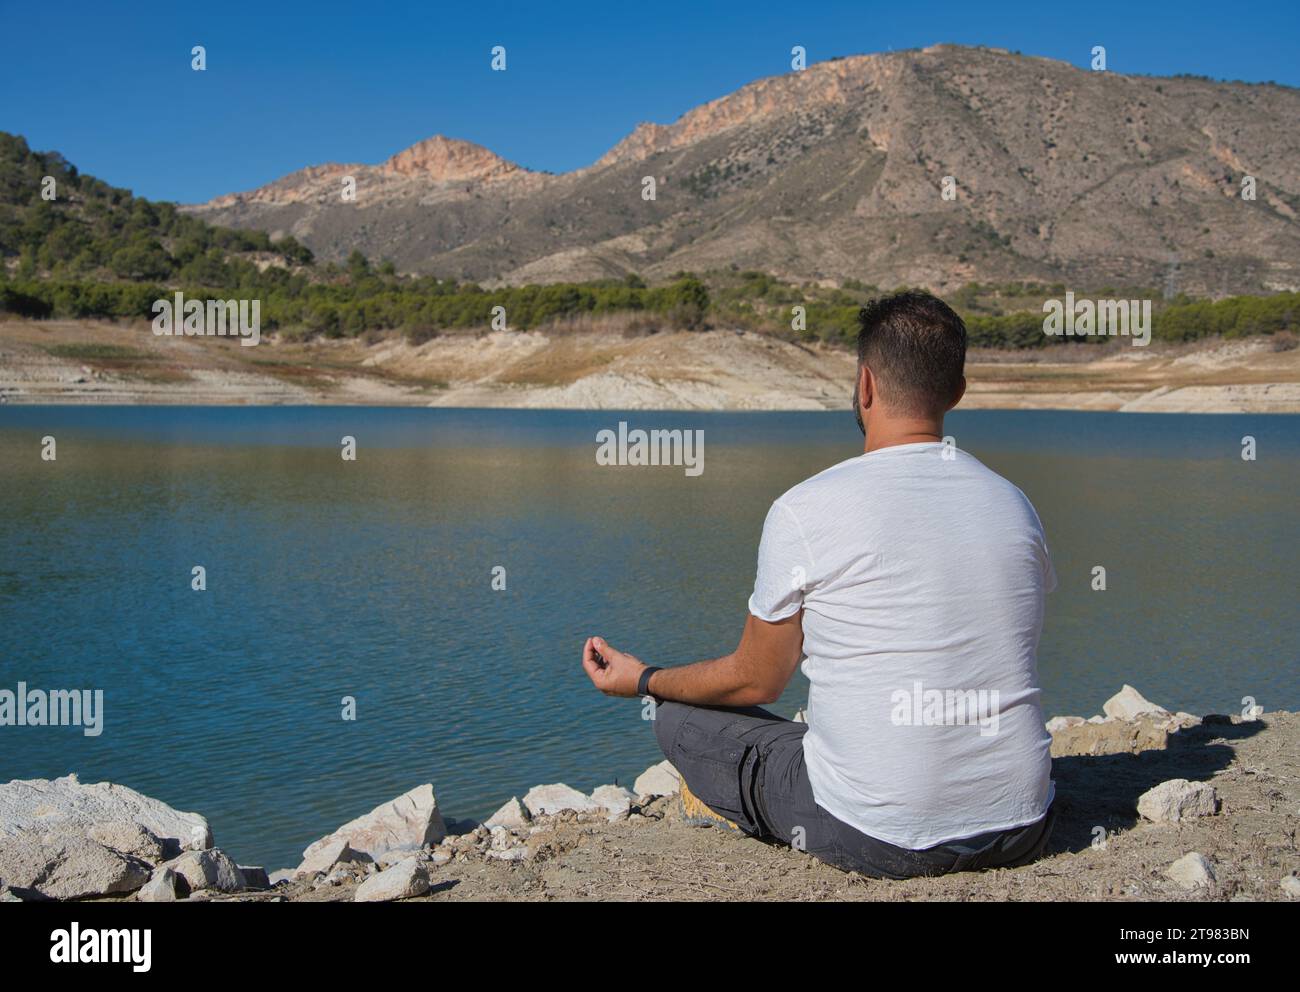 Homme adulte dans une pose détendue méditant au bord d'un lac par une journée ensoleillée. Idéal pour les projets liés aux sensations et aux émotions, au calme et aux sports de plein air. Banque D'Images